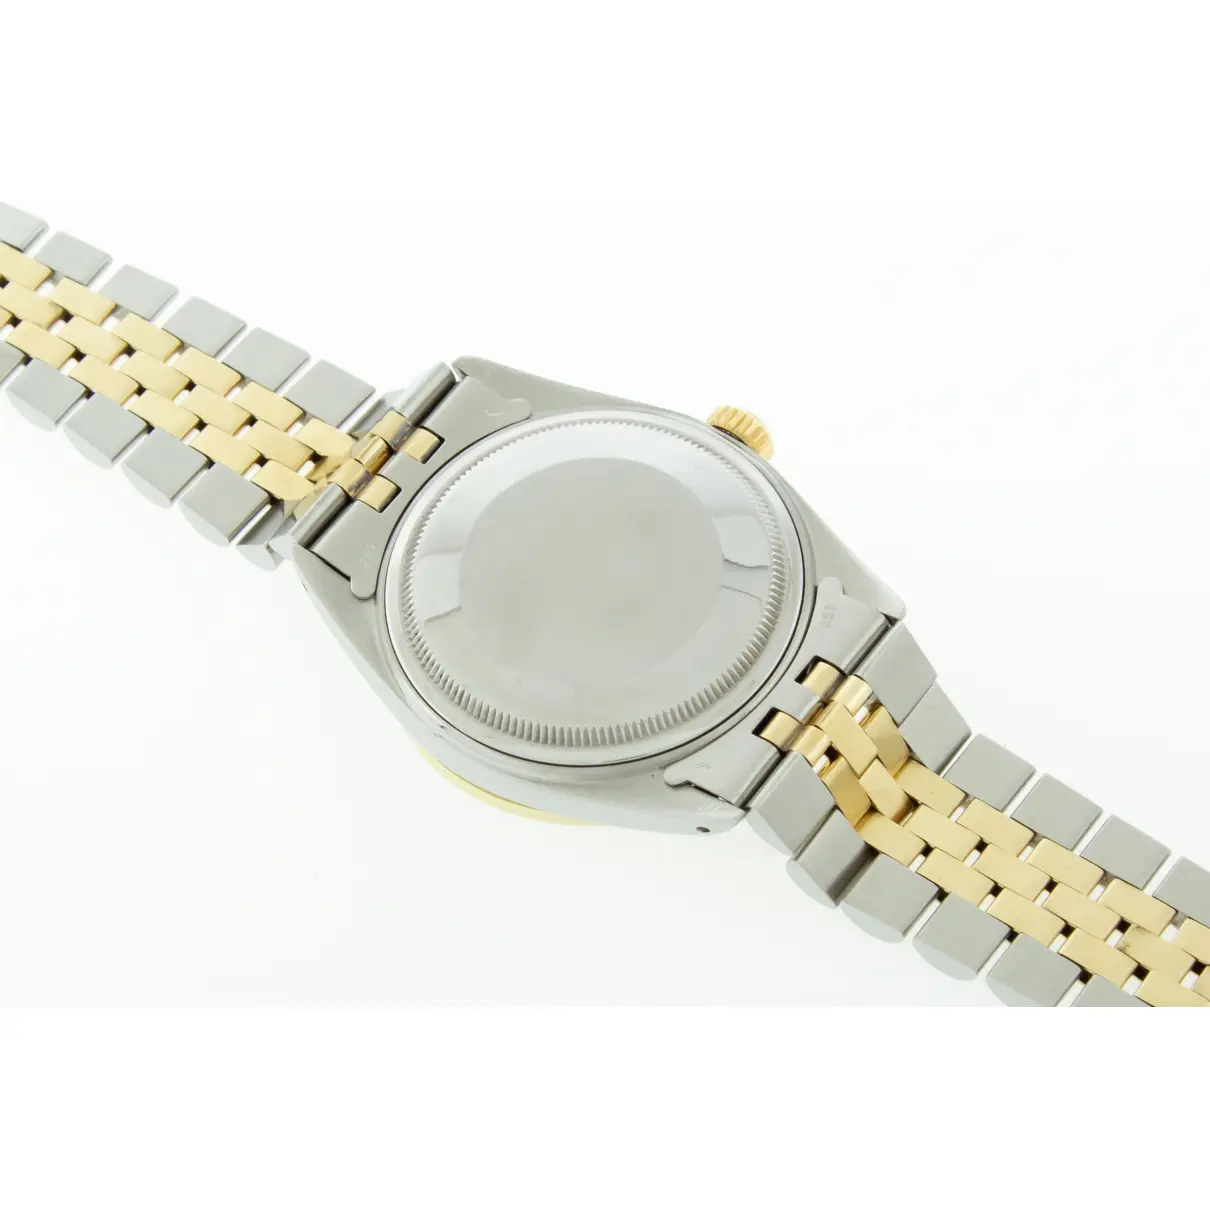 Datejust 36mm watch Rolex - Vintage